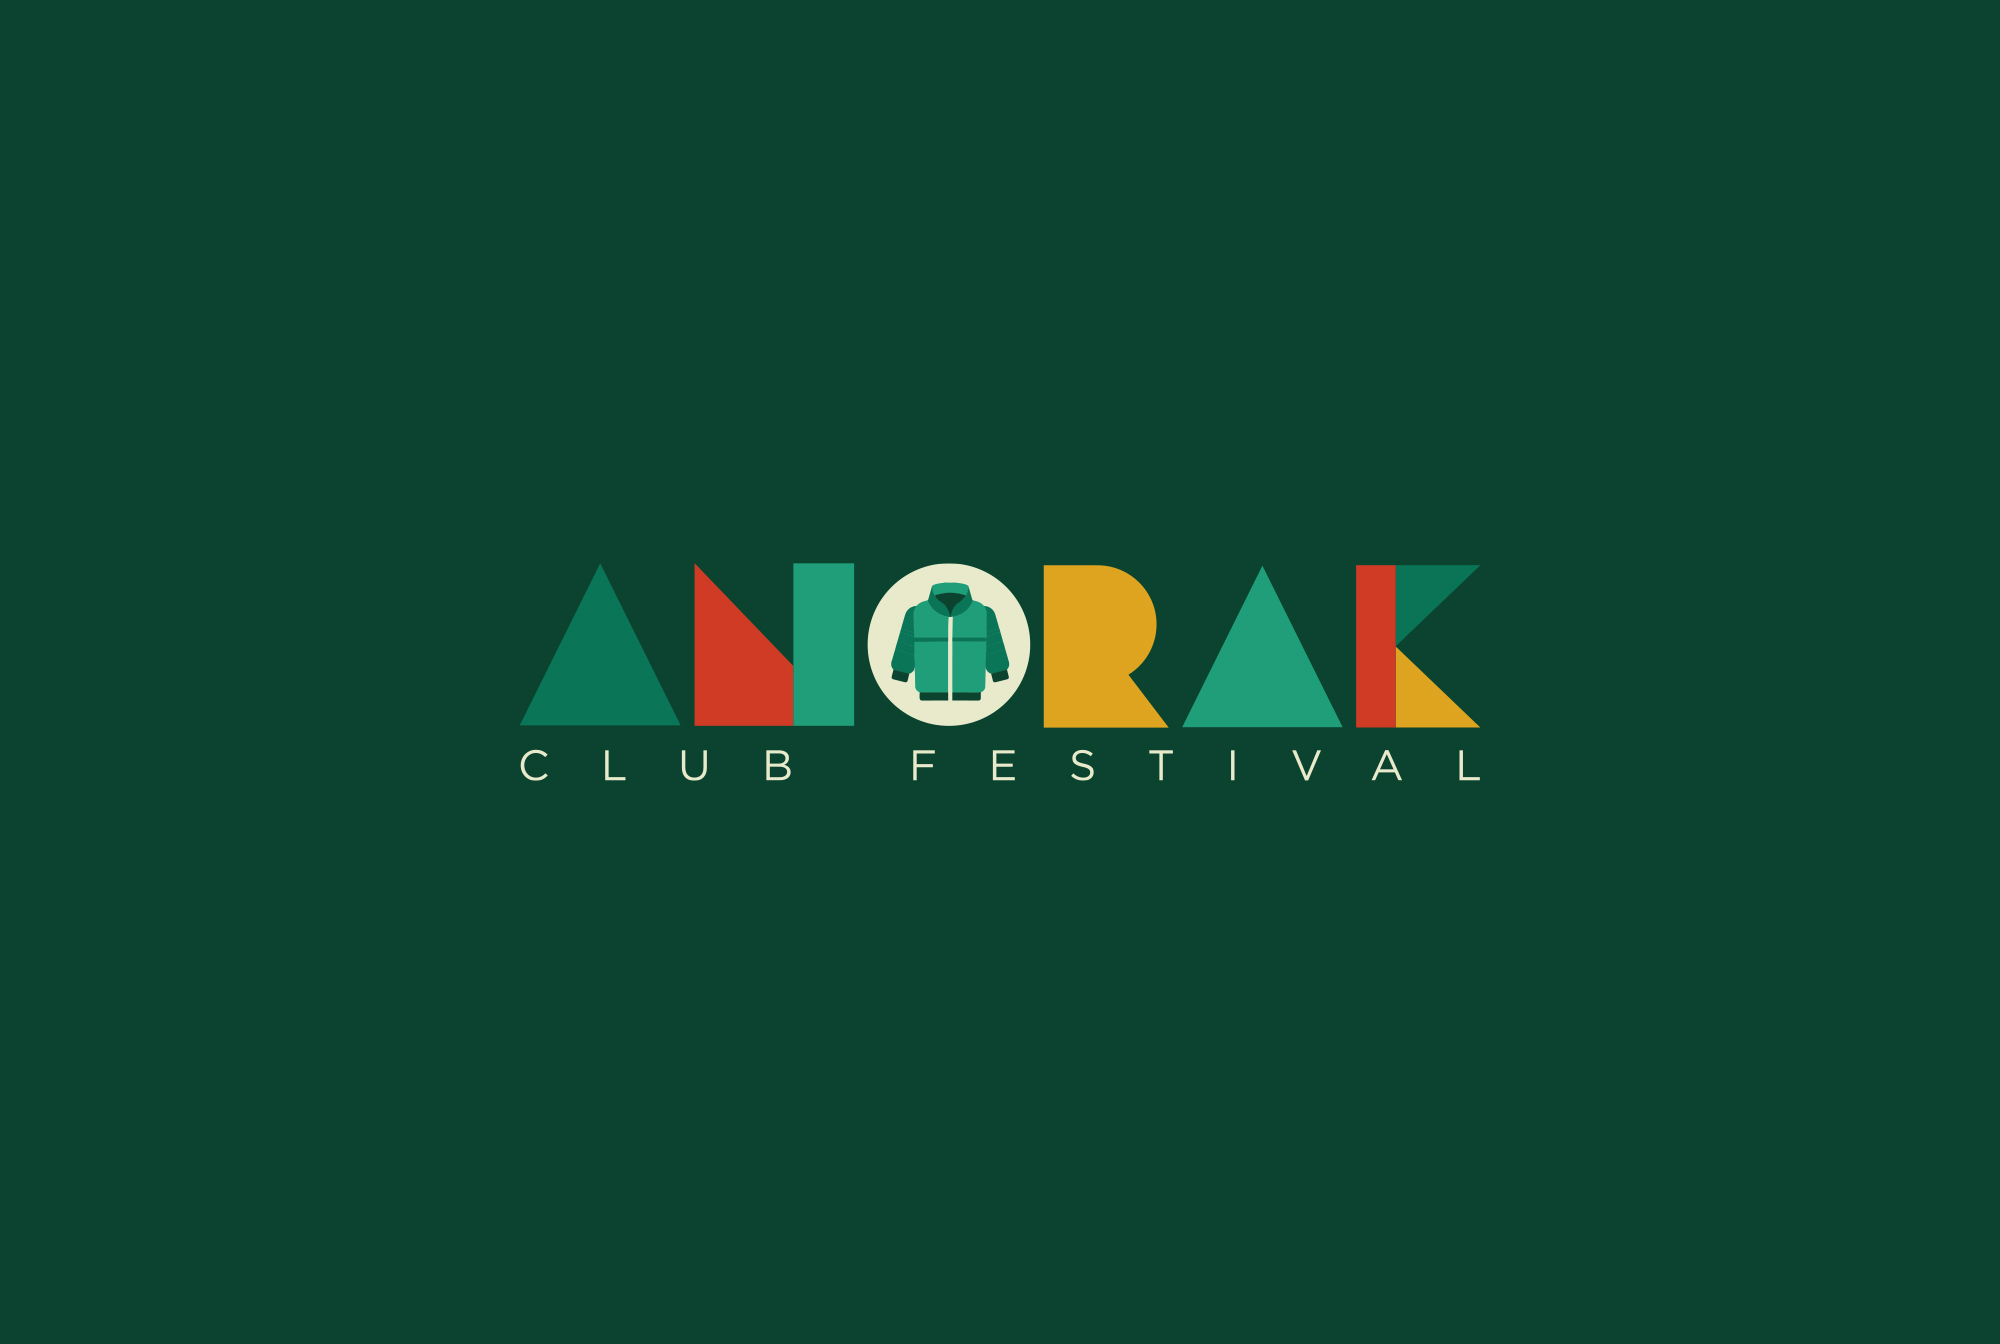 Anorak Club Festival